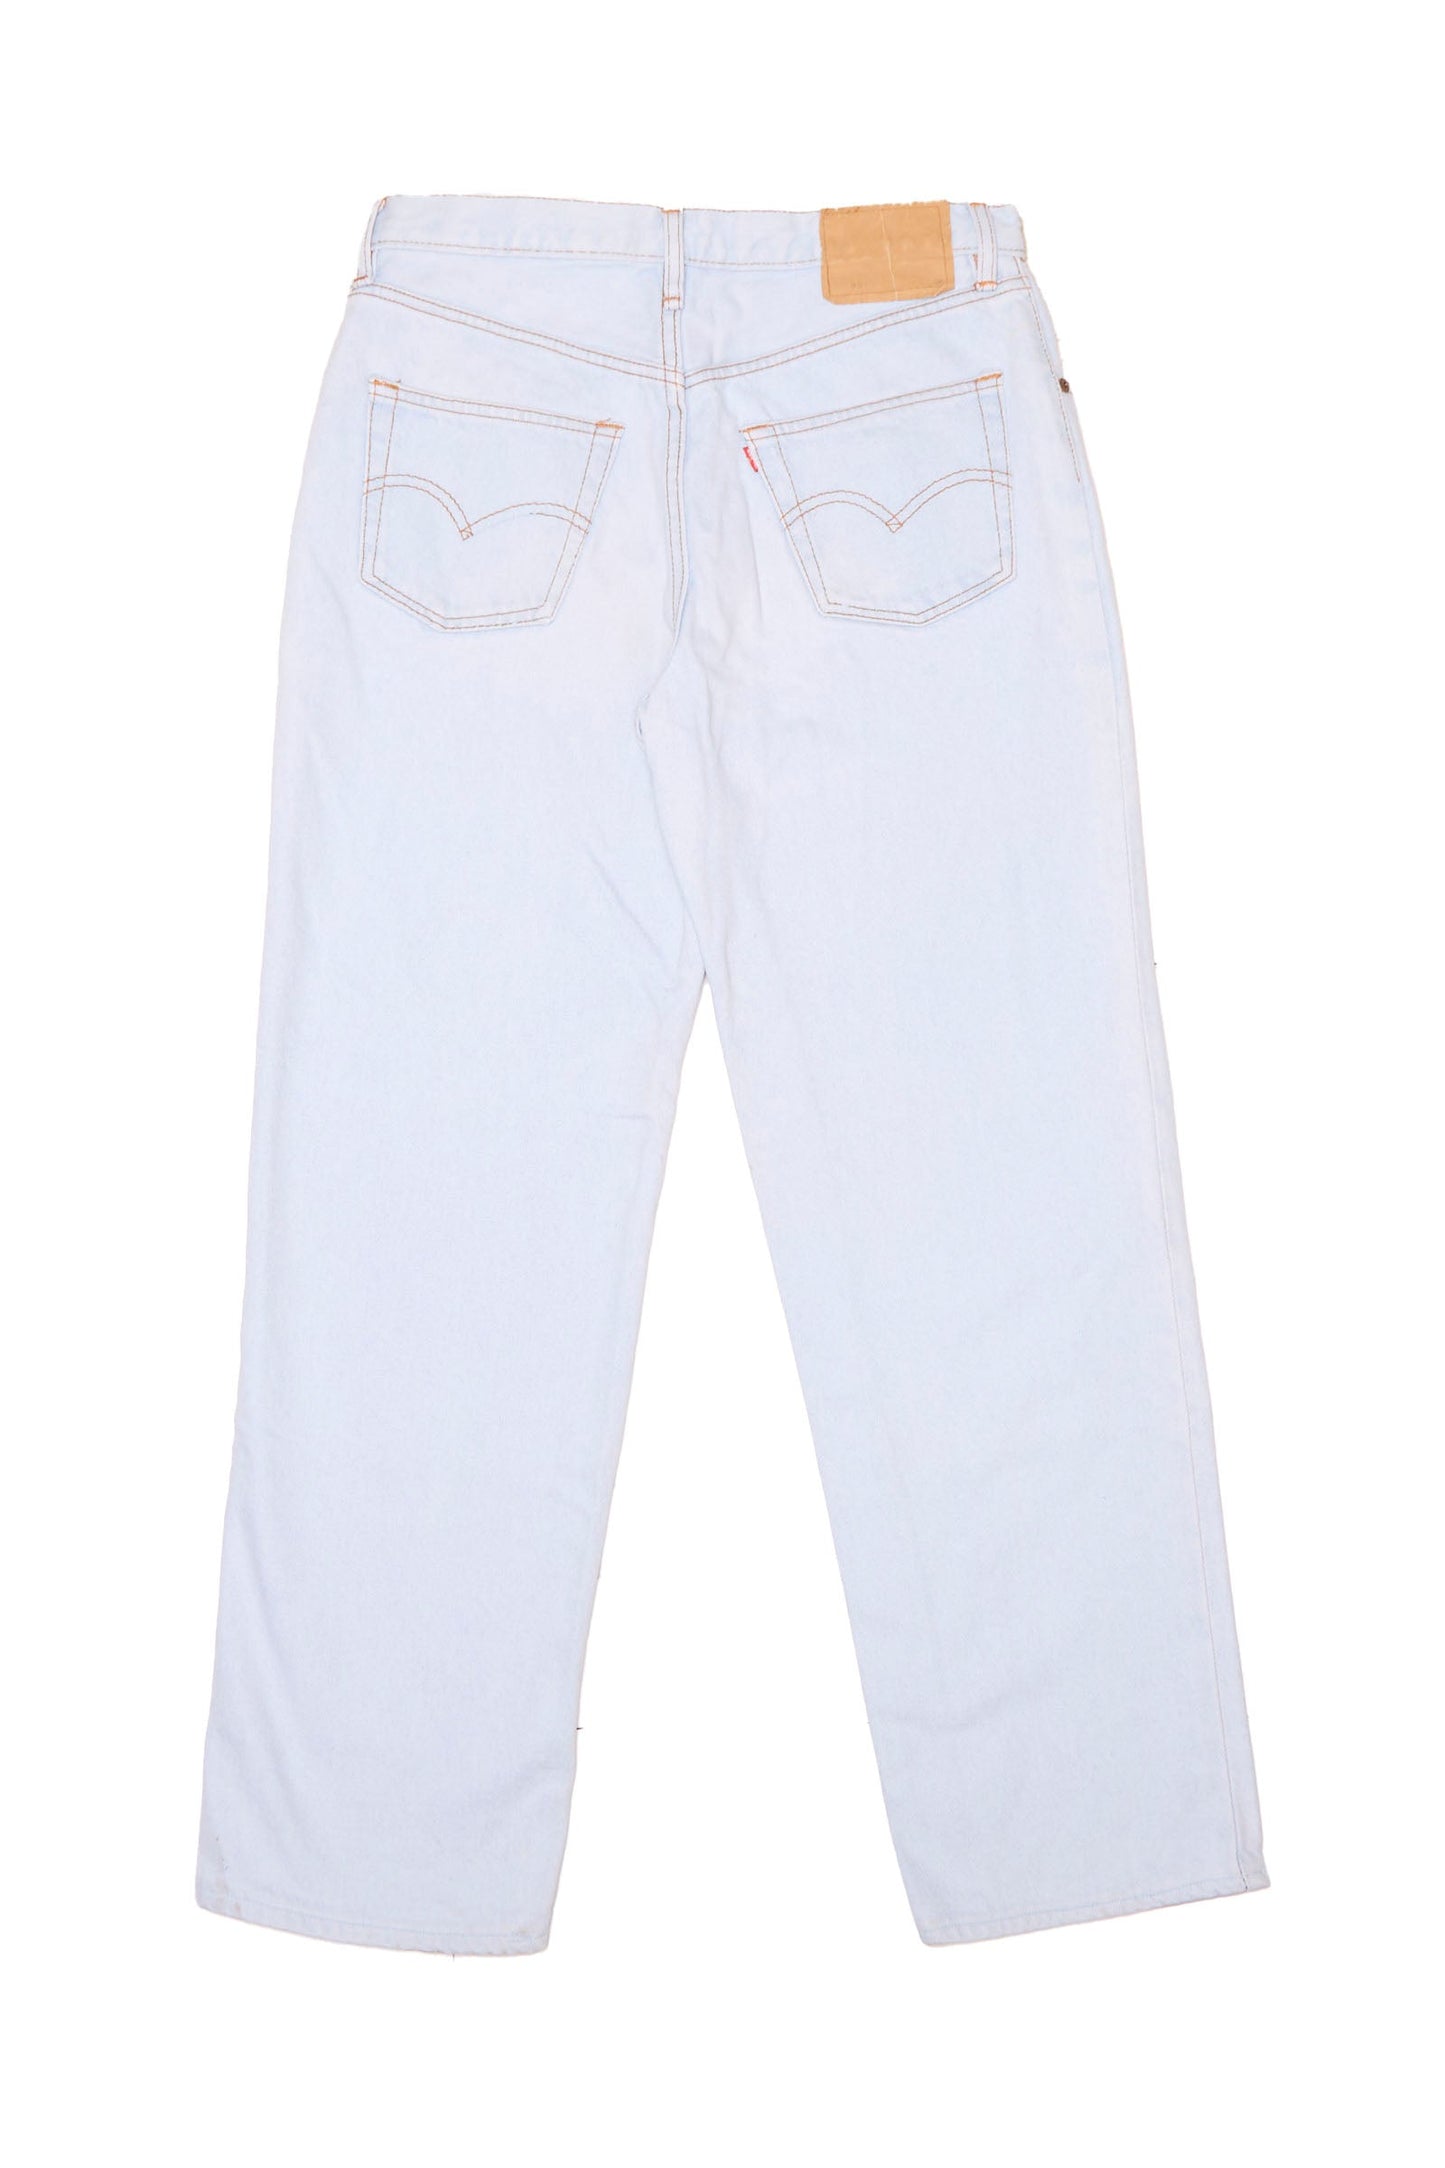 Levis Straight Cut Jeans - W32" L36"